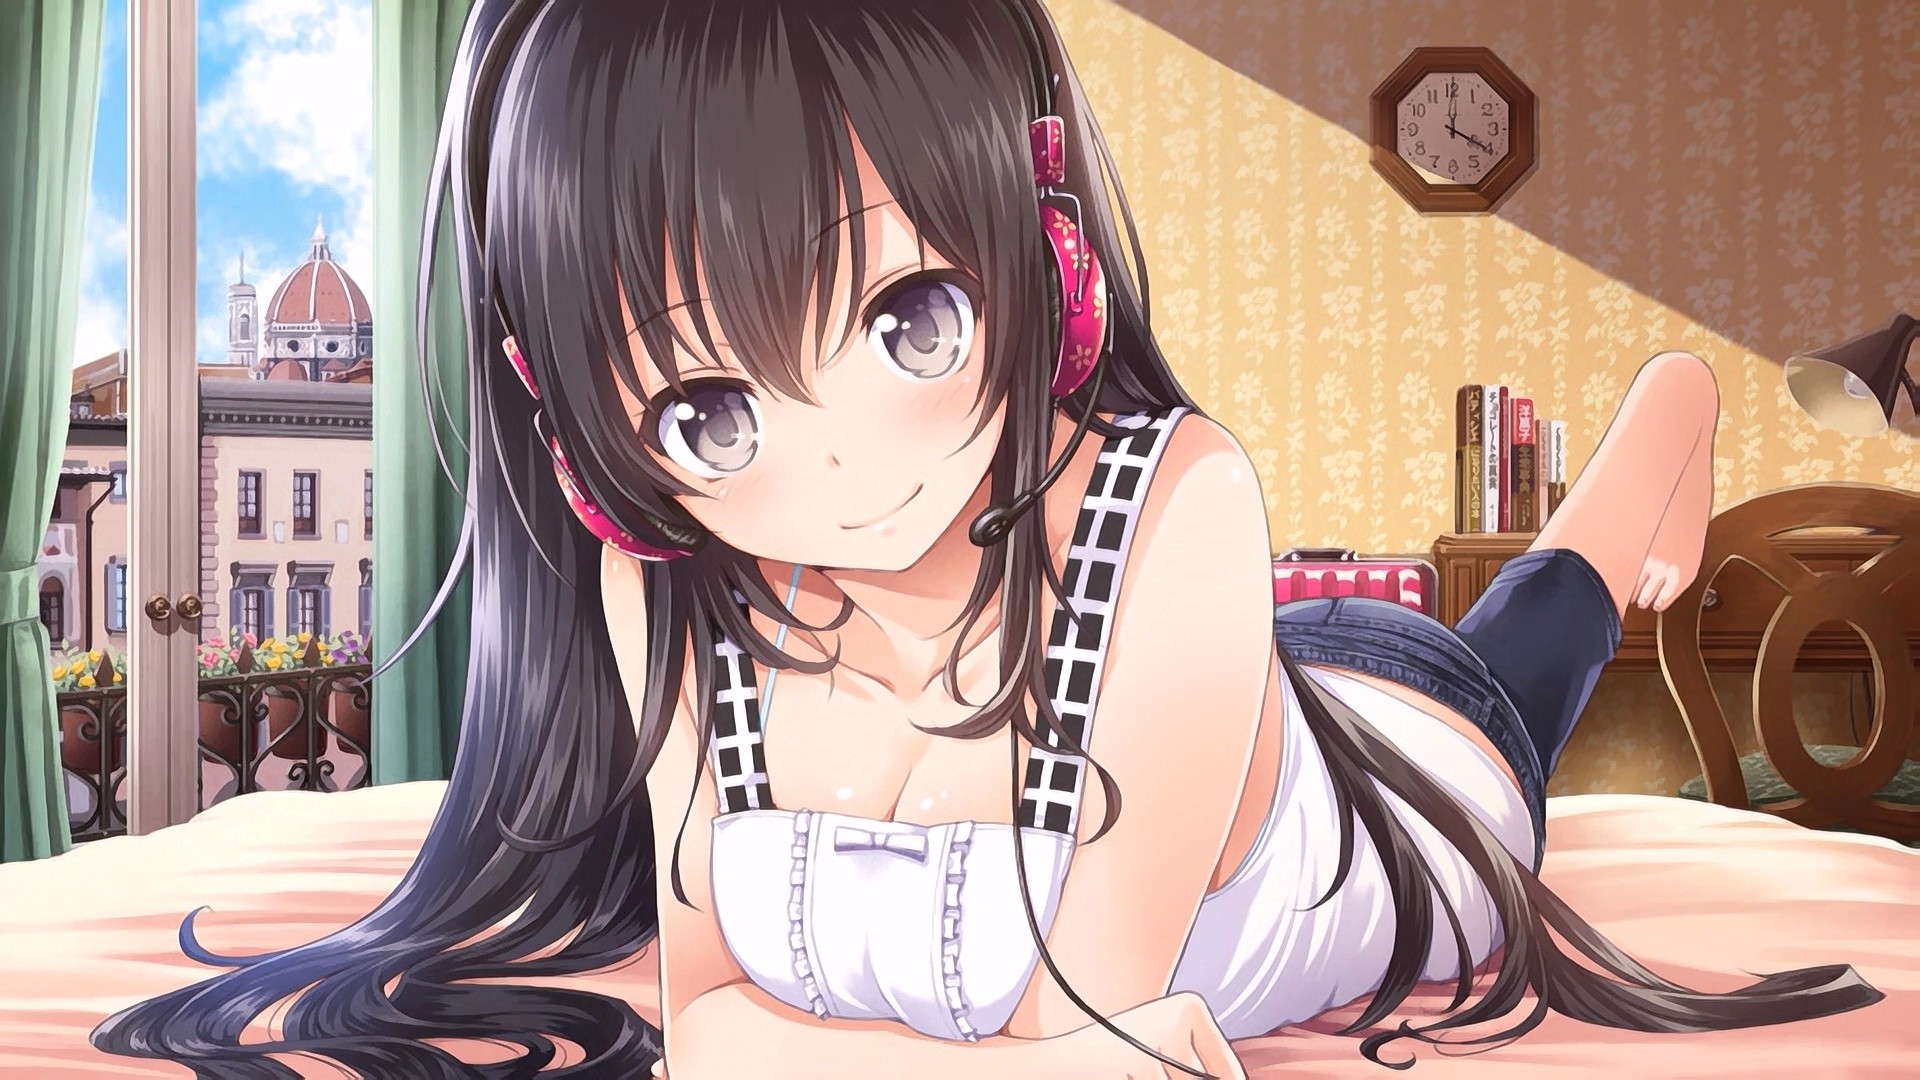 Anime 1920x1080 anime anime girls brunette long hair in bed smiling